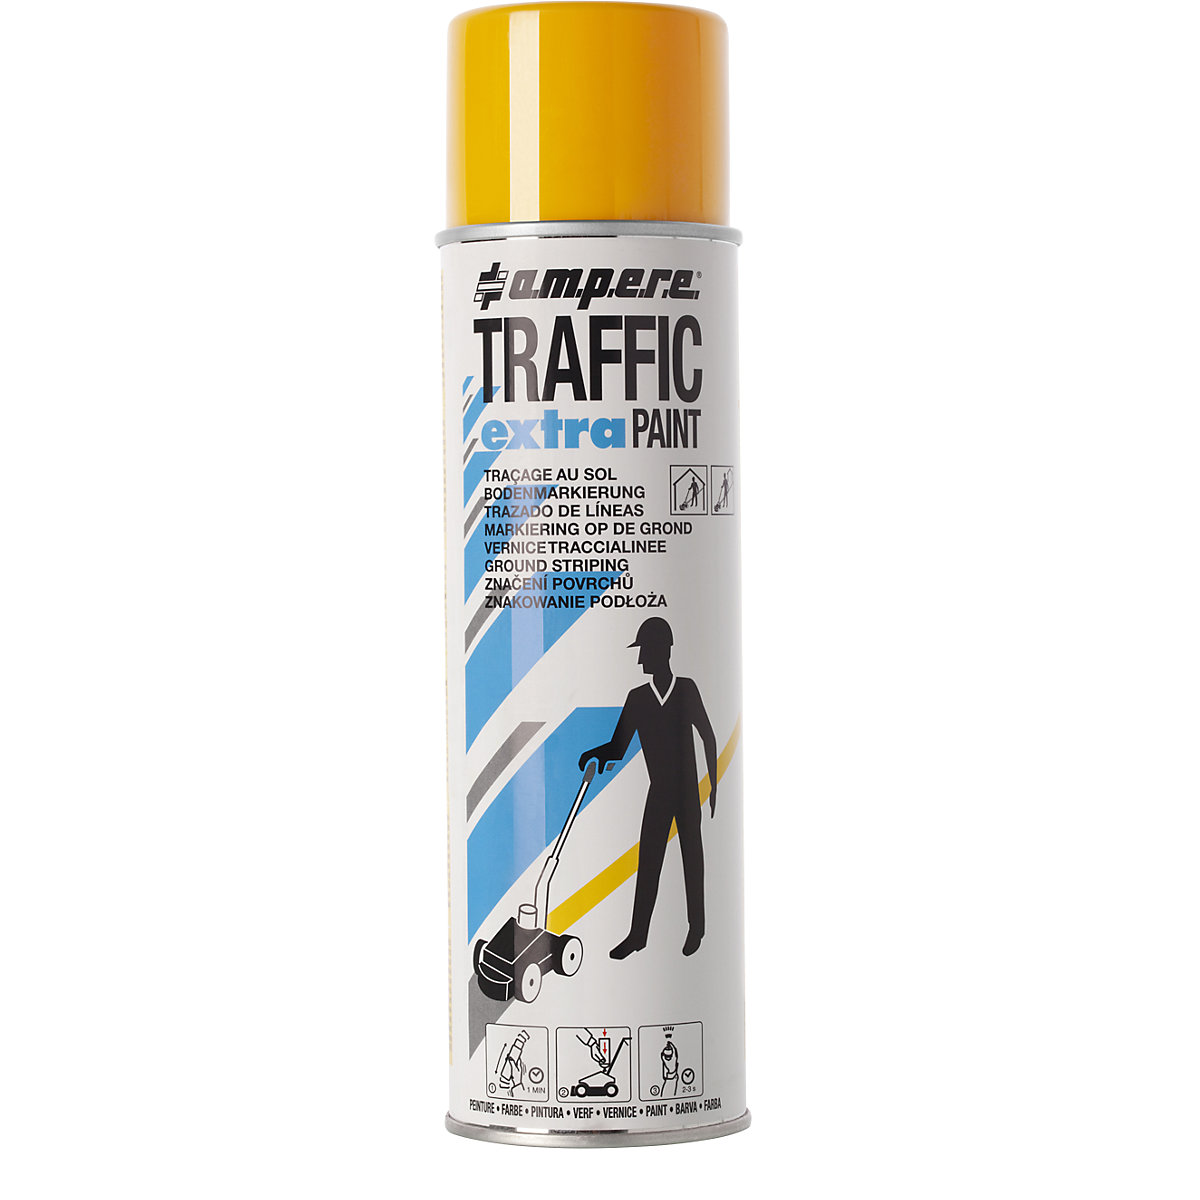 Peinture de marquage Traffic extra Paint® pour fortes contraintes – Ampere